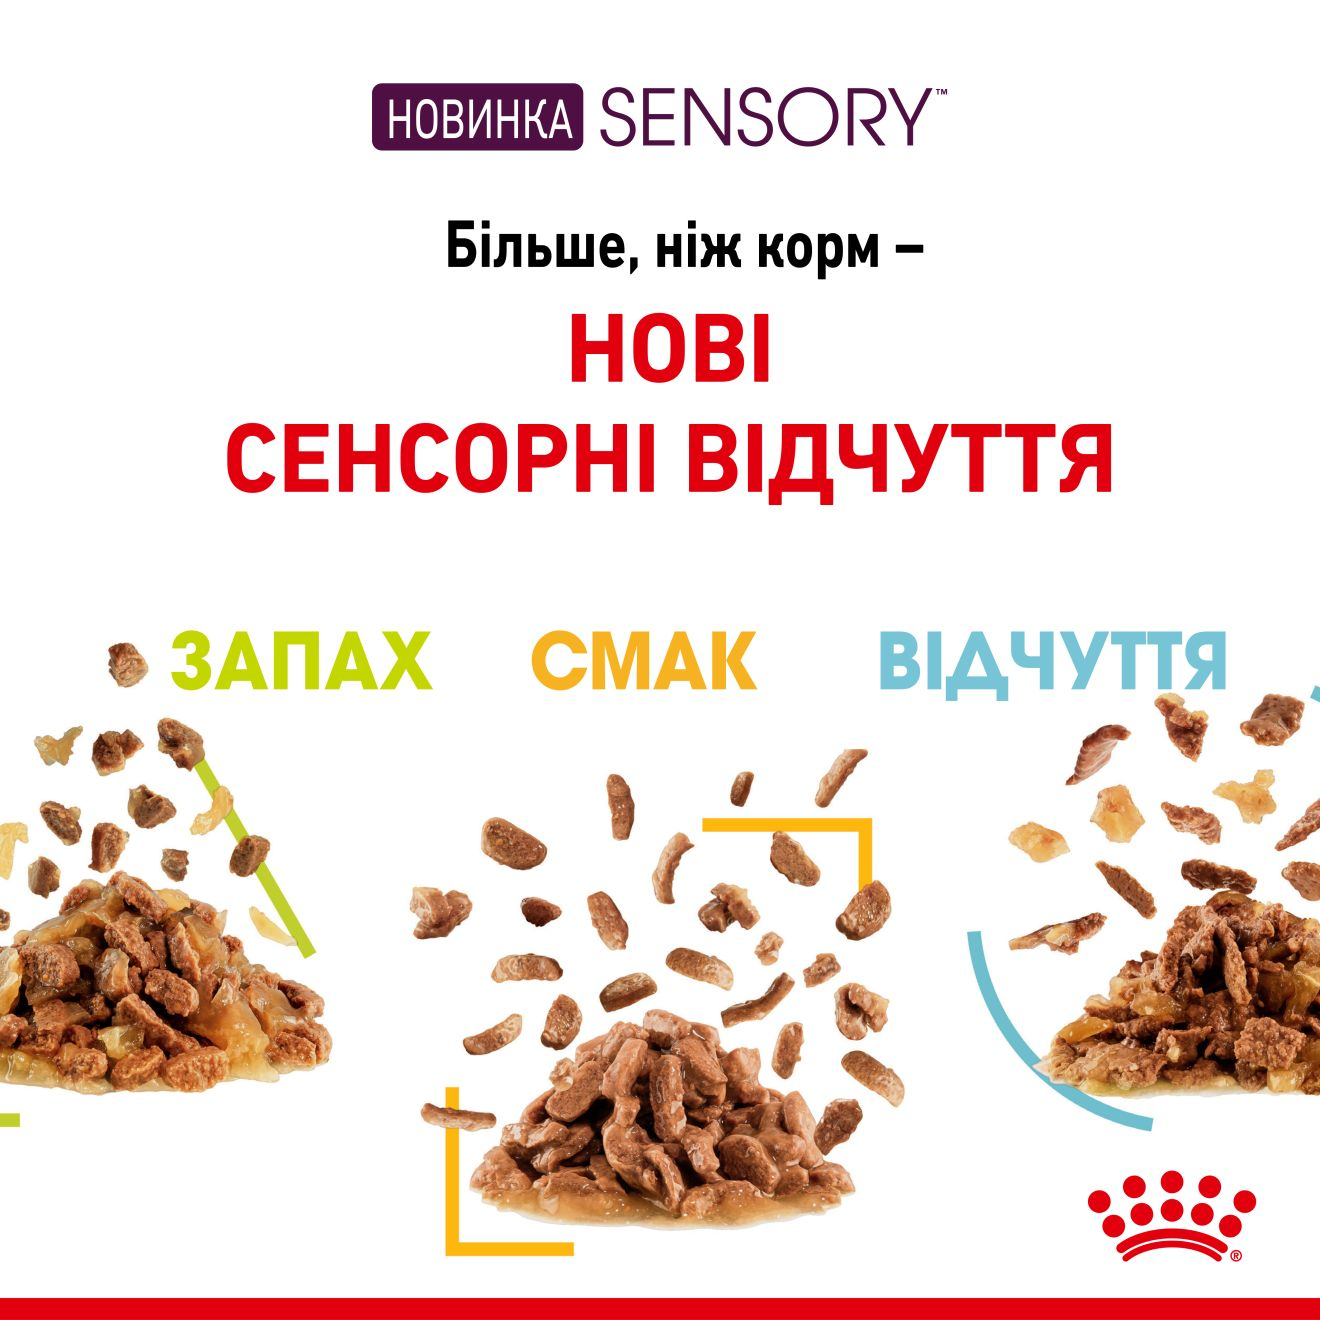 Sensory™ Smell Chunks in gravy